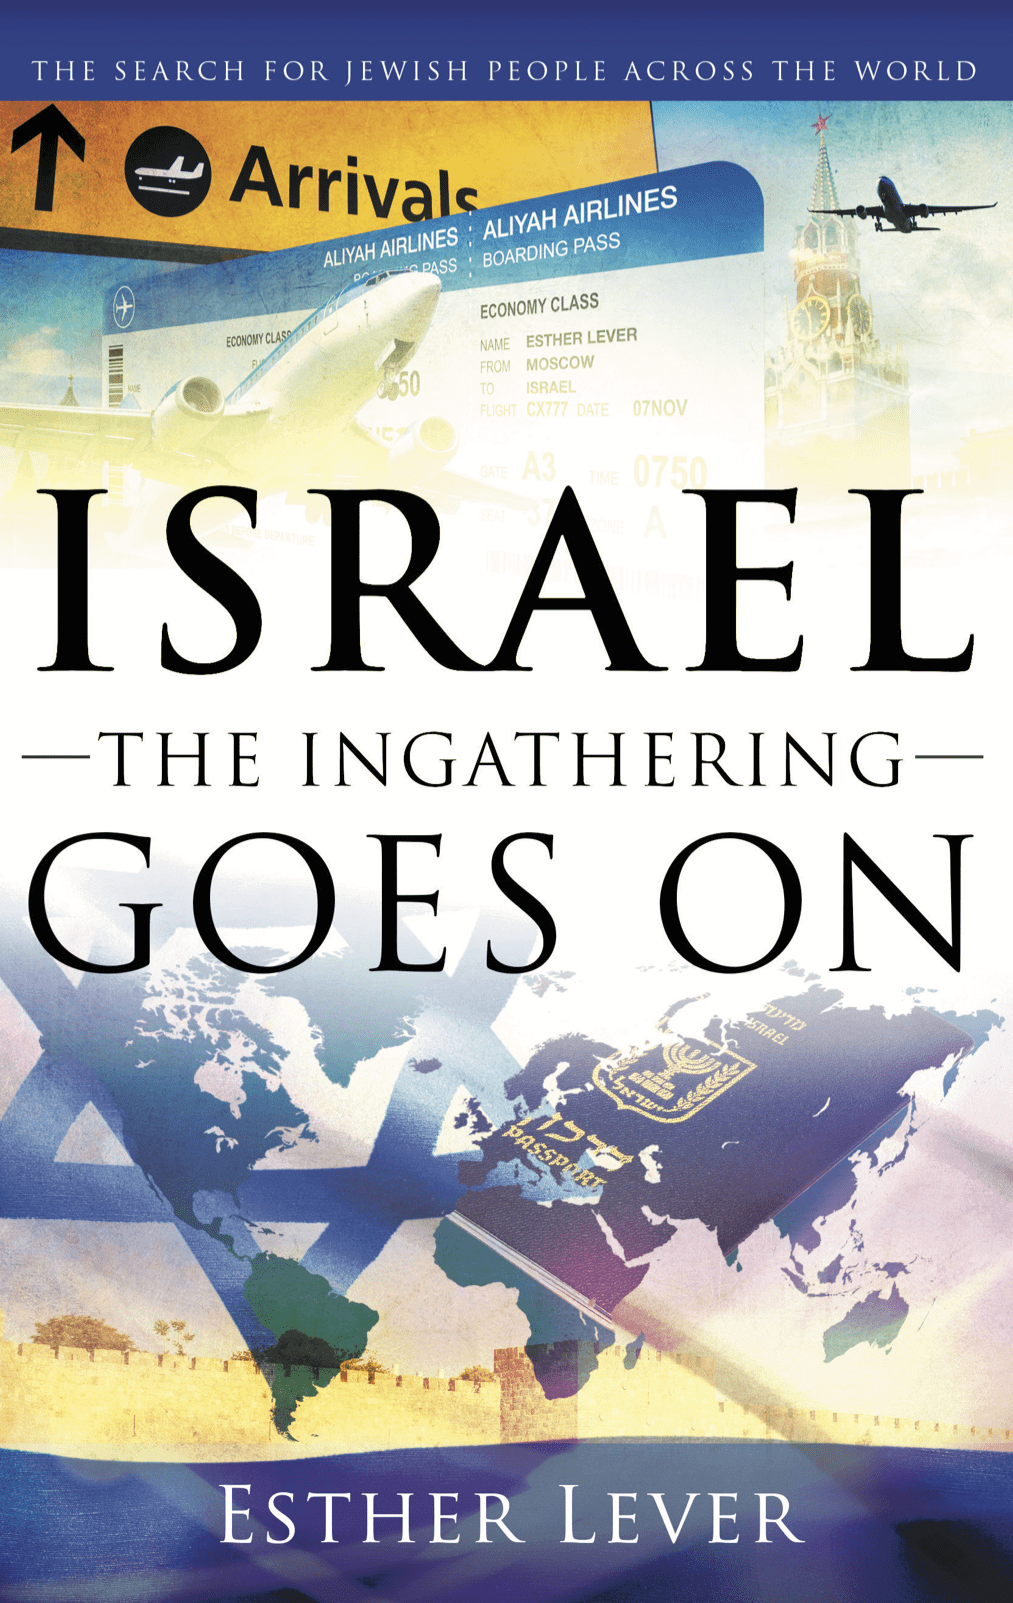 Israel, the ingathering goes on